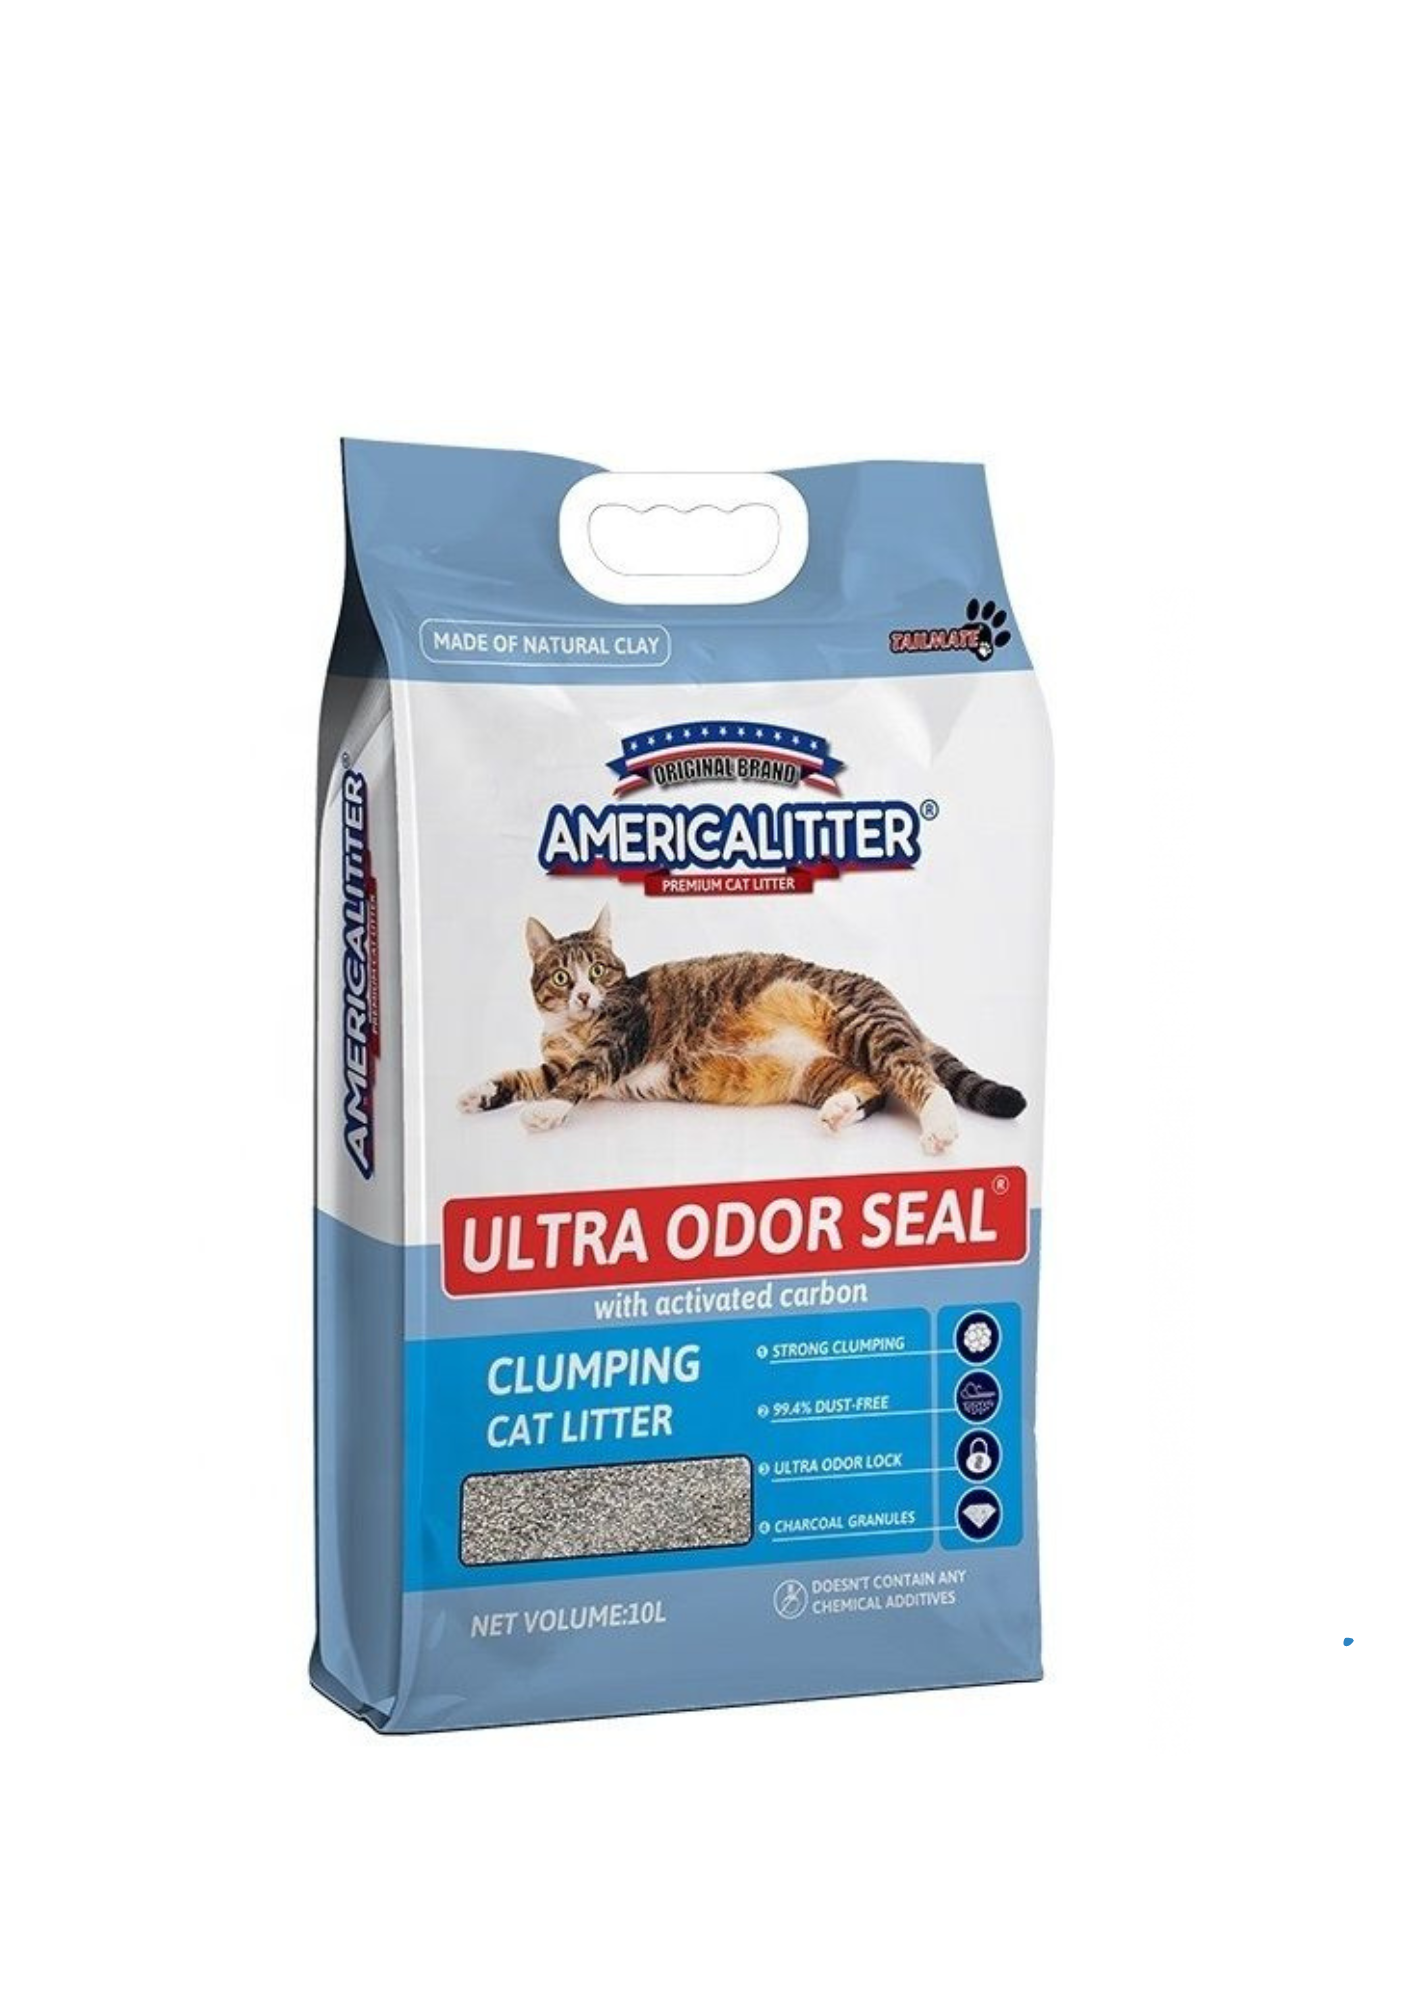 Kindpet AMERICA CAT LITTER ULTRA ODOR SEAL Cat Litter, 18L, 15KG